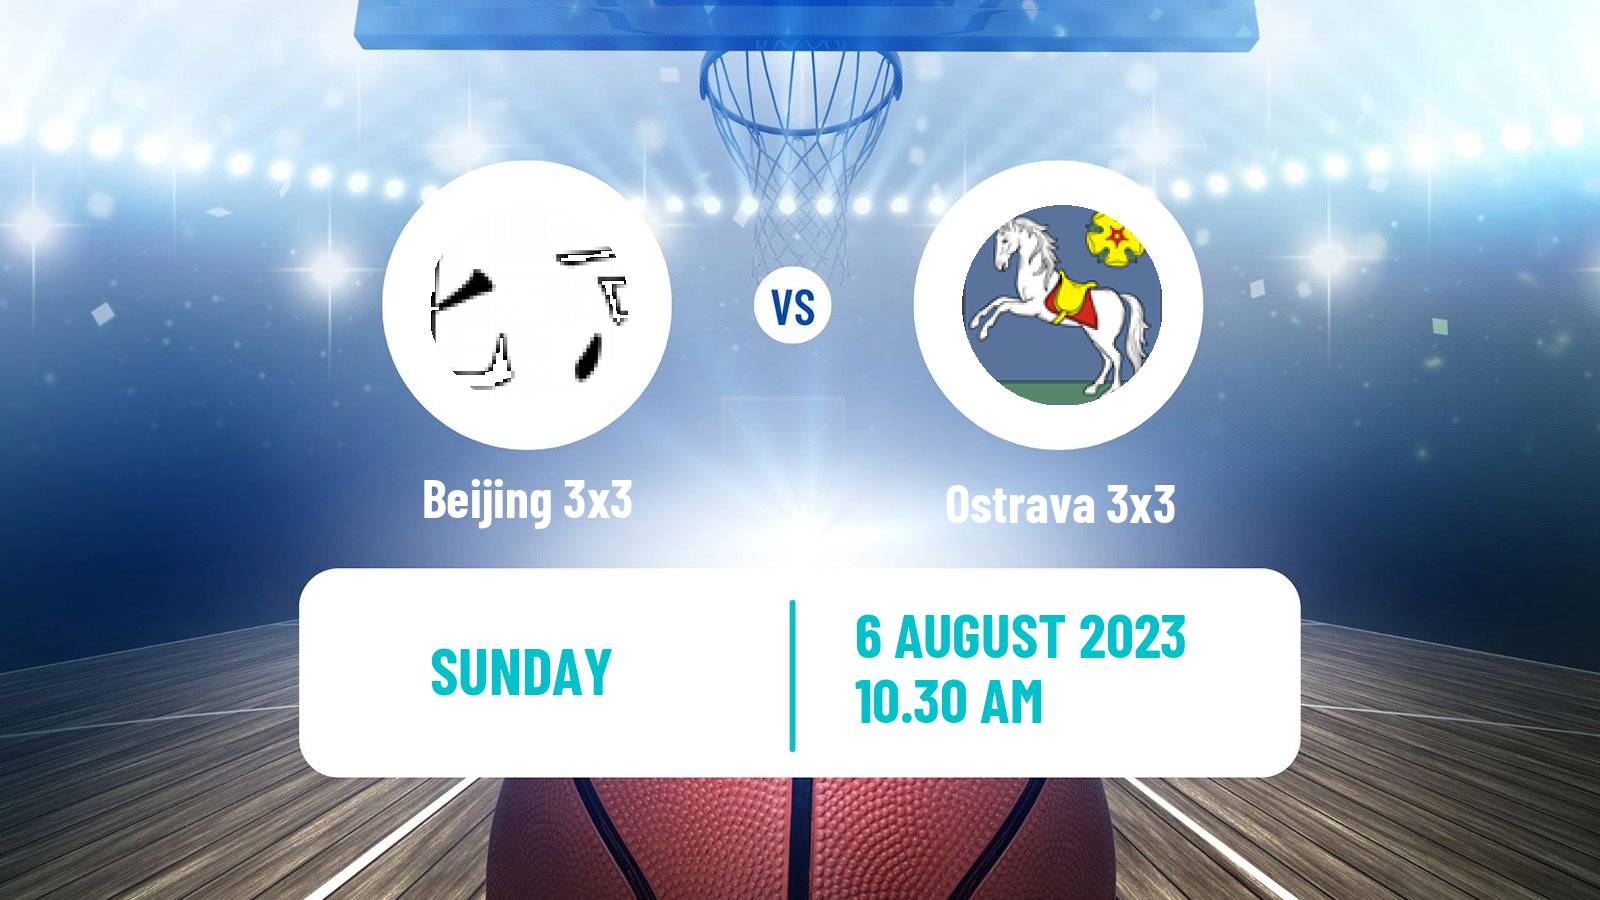 Basketball World Tour Prague 3x3 Beijing 3x3 - Ostrava 3x3